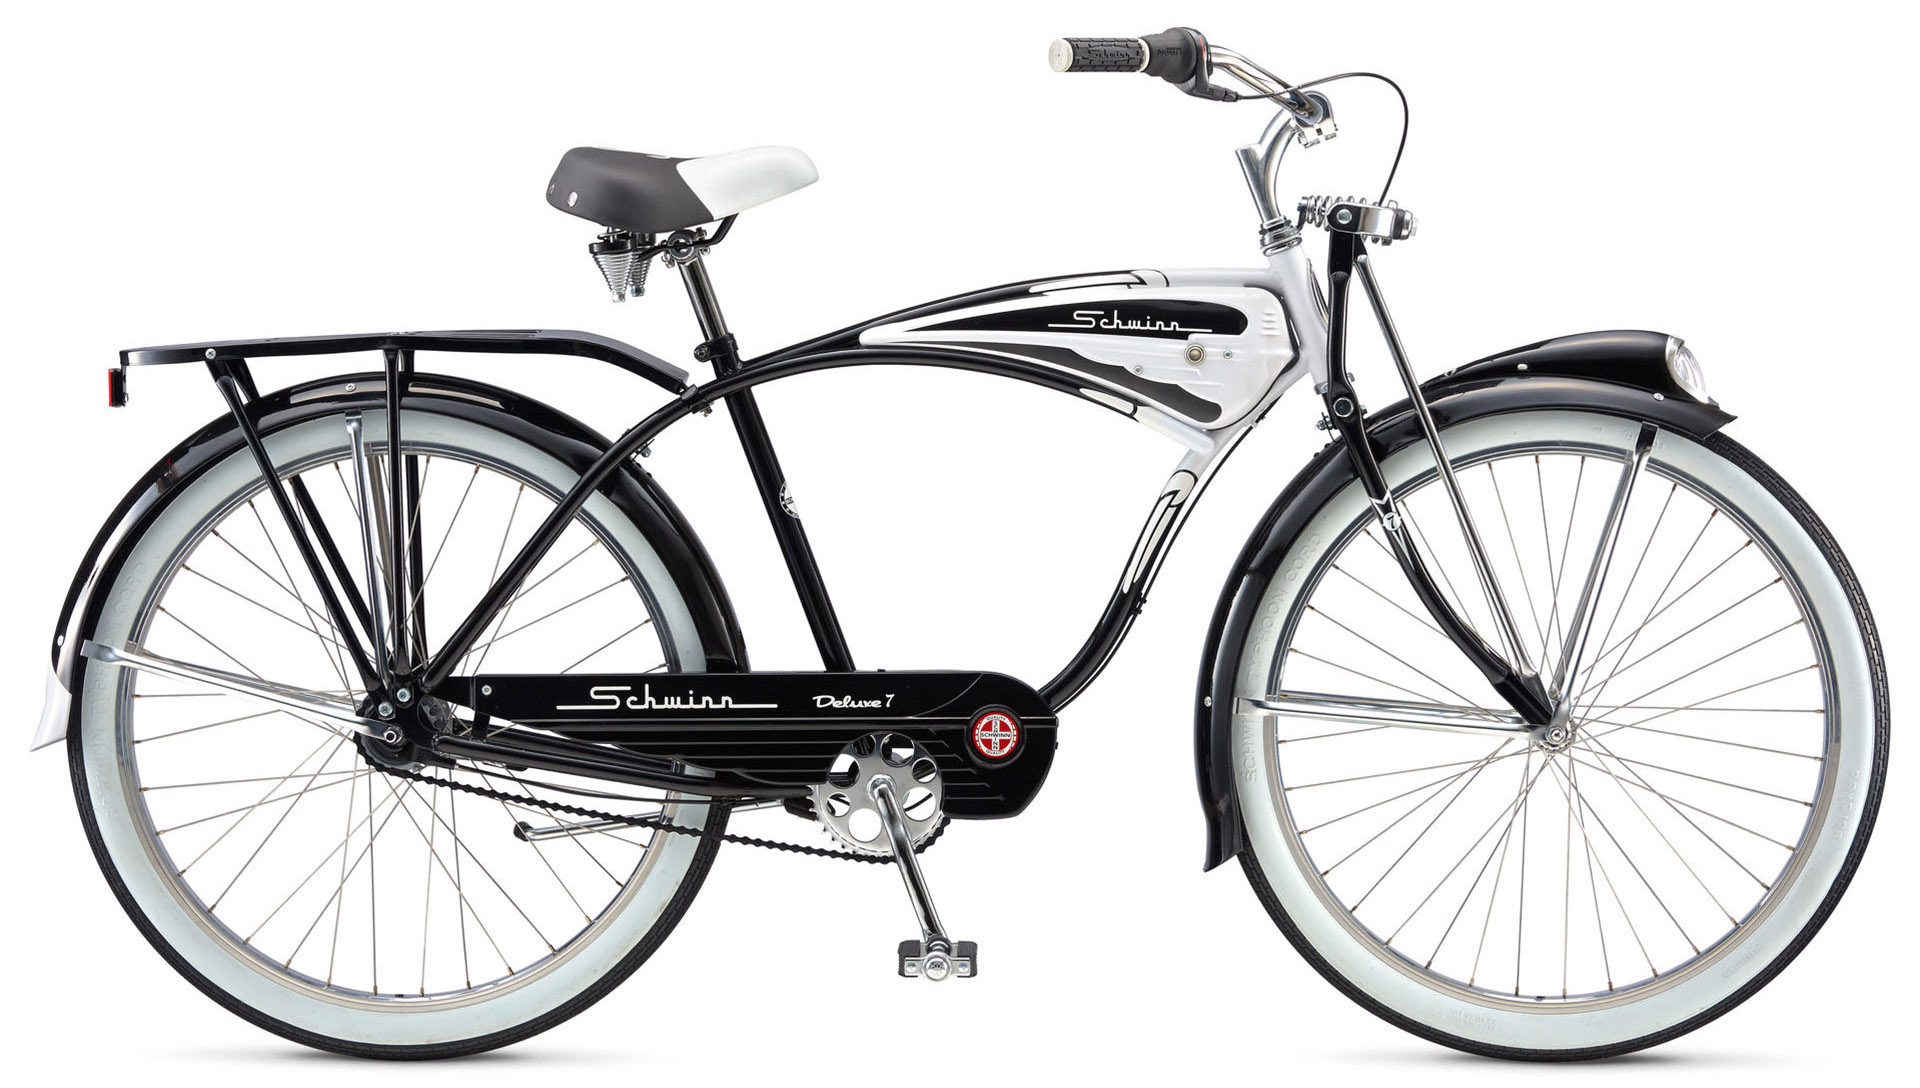  Отзывы о Городском велосипеде Schwinn Classic Deluxe 2020